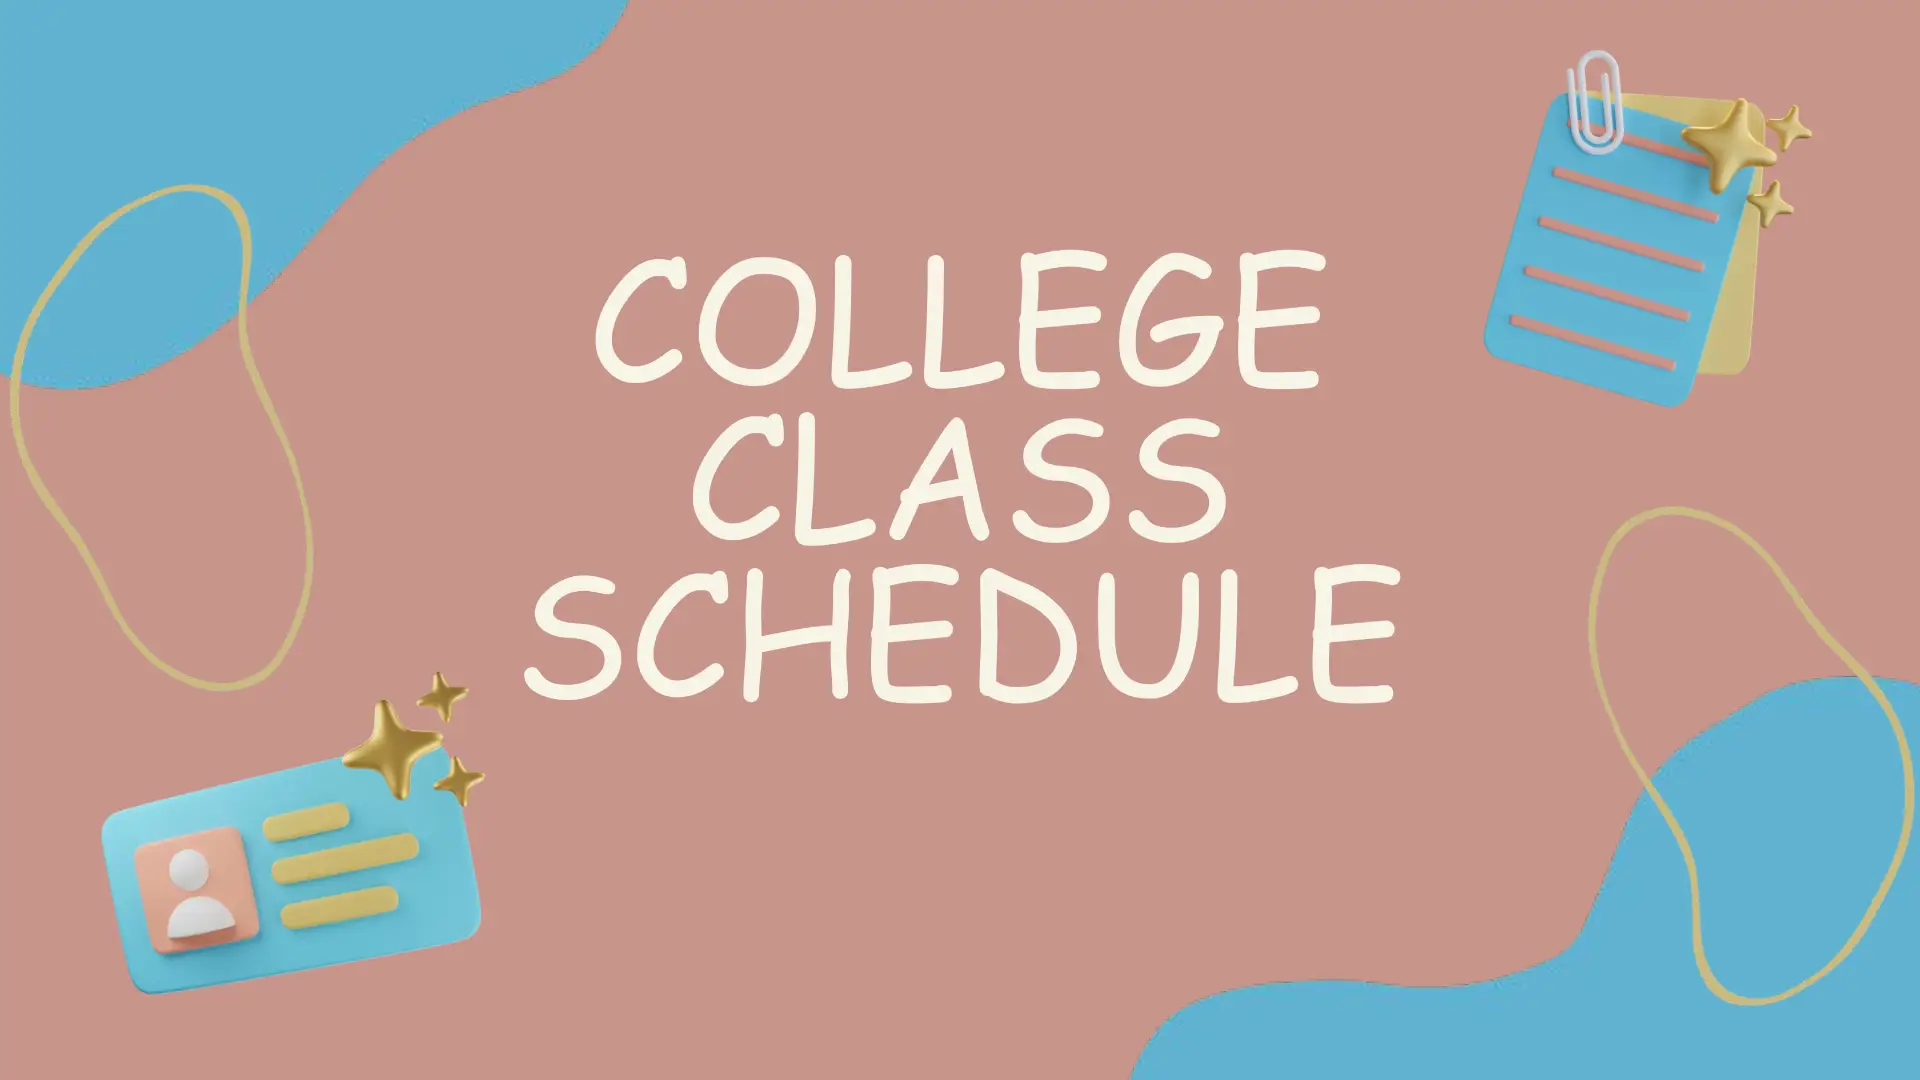 College Class Schedule Template